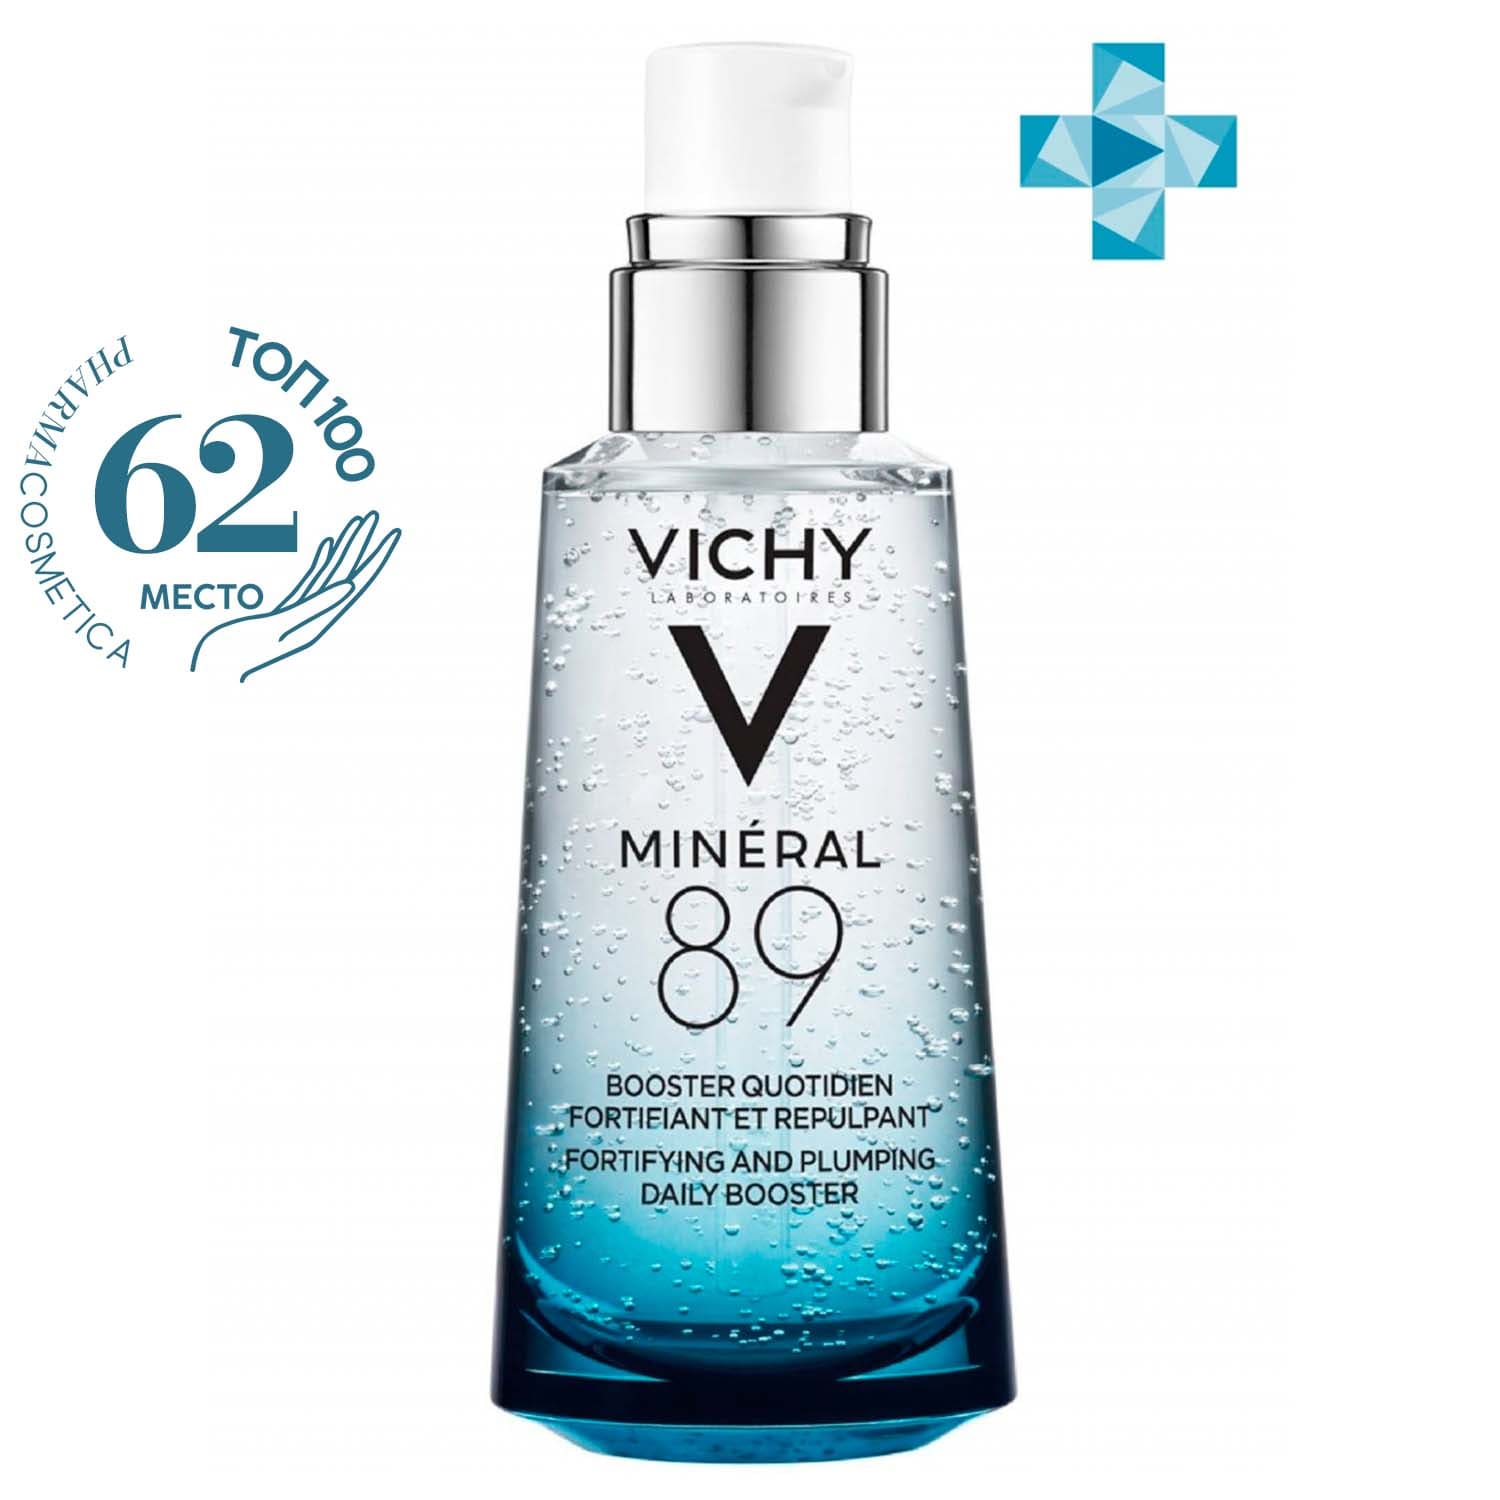 Vichy Ежедневный гель-сыворотка для кожи, подверженной агрессивным внешним воздействиям, 50 мл (Vichy, Mineral 89) сыворотка для кожи подверженной внешним воздействиям mineral 89 booster сыворотка 30мл